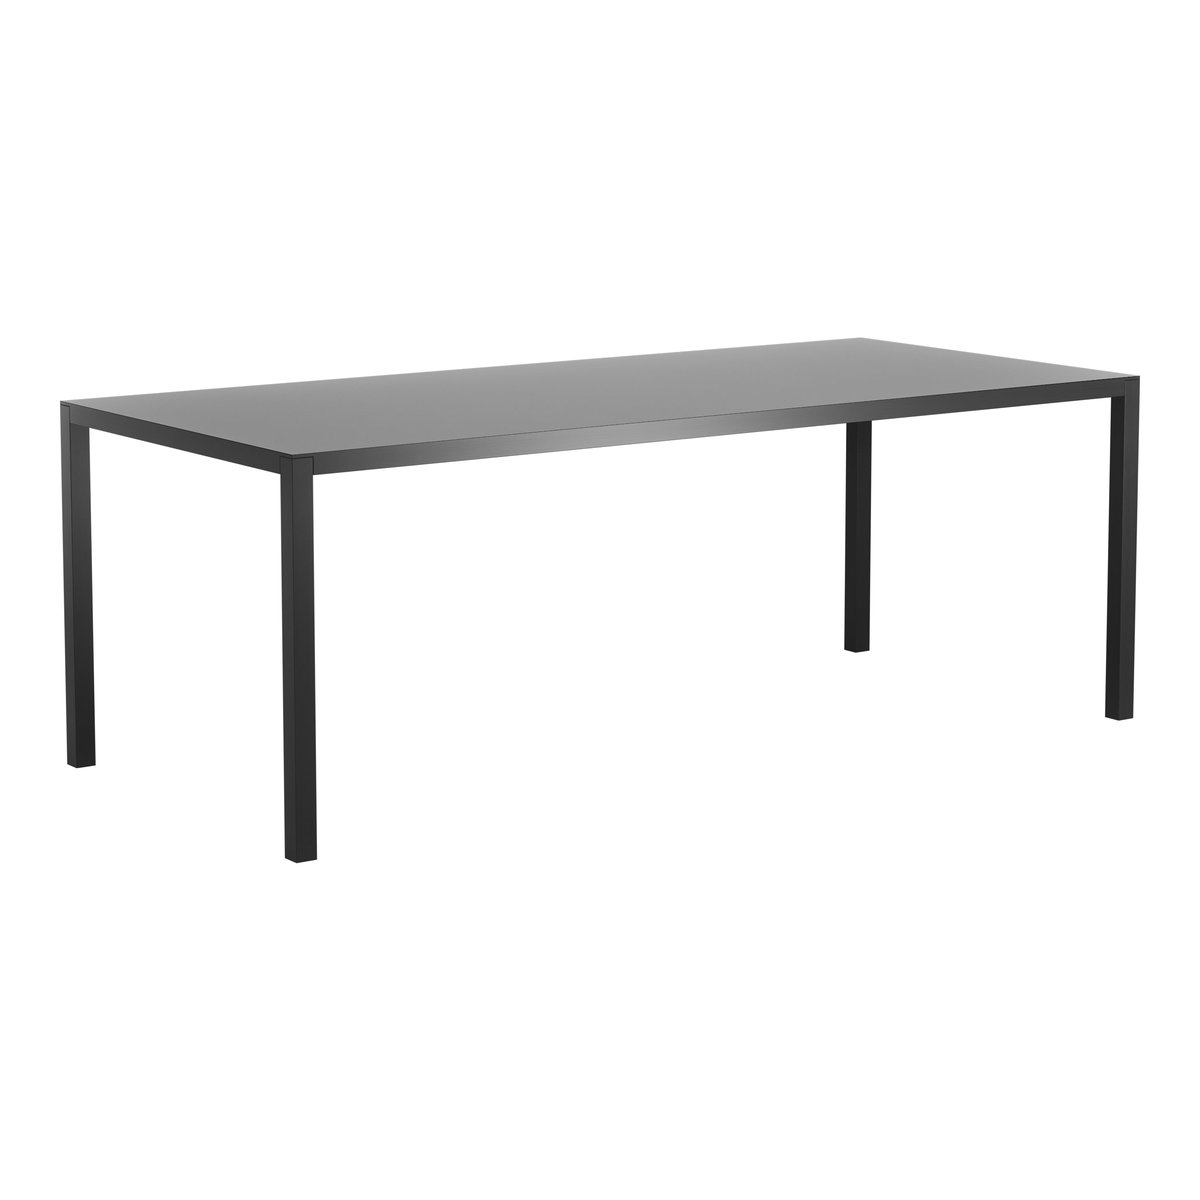 Swedese Bespoke tafel 90 x 200cm Es zwart glanzend